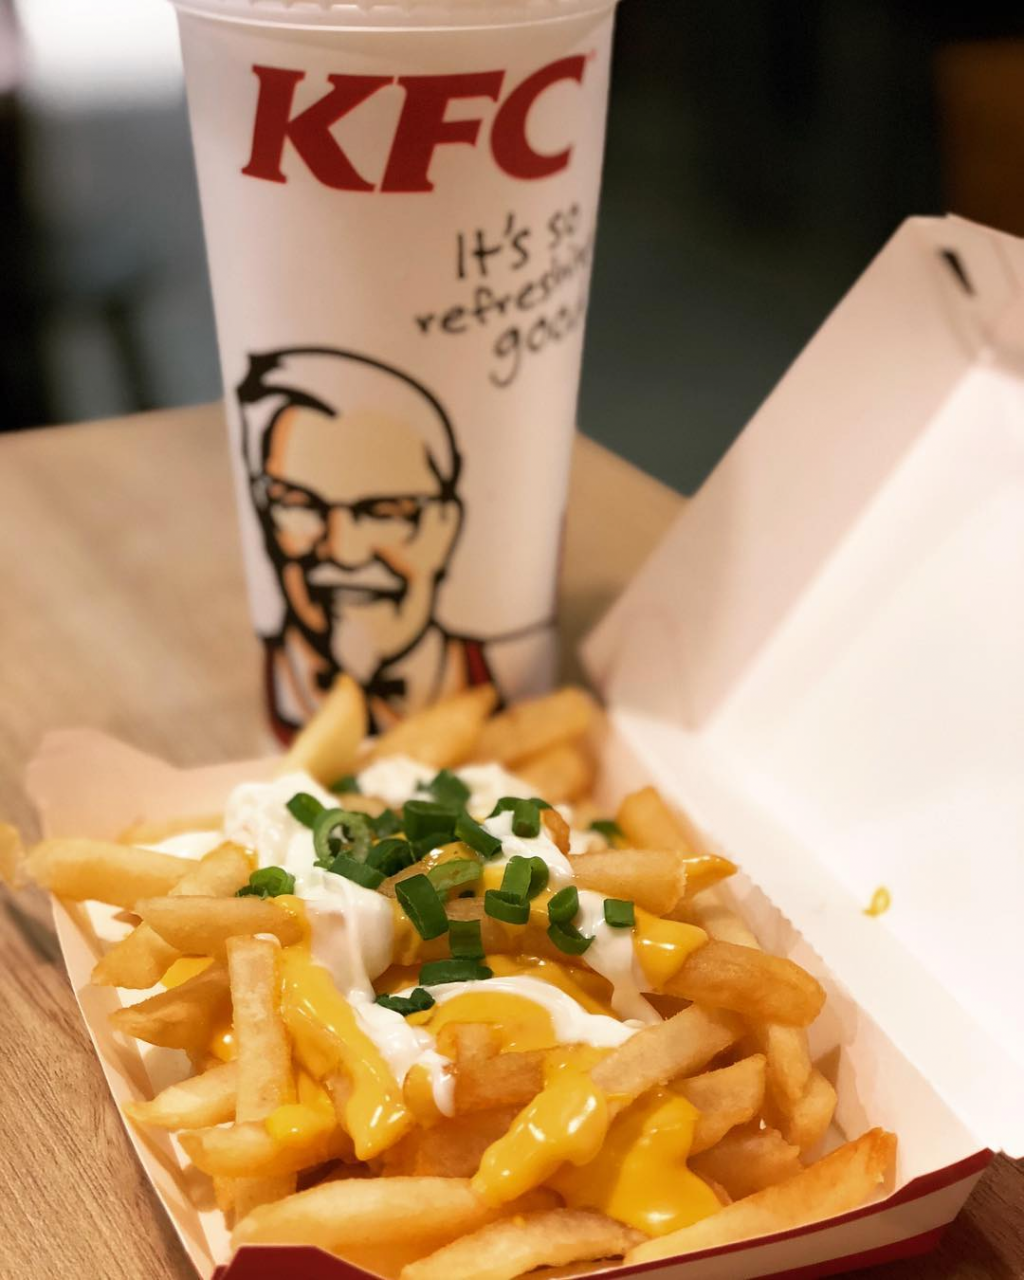 KFC cheese fries